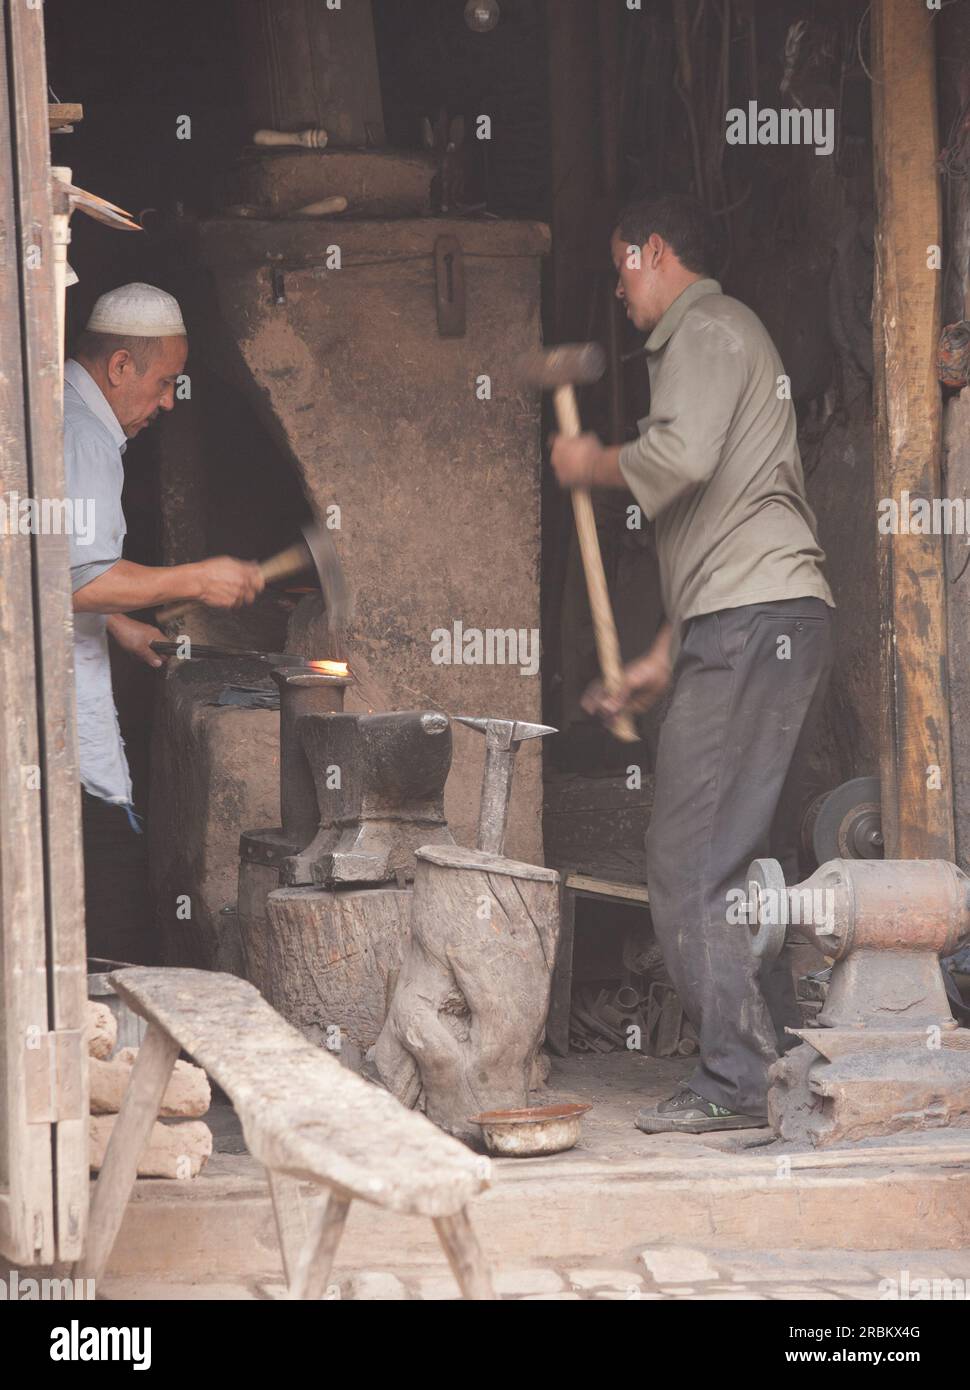 Deux forgerons travaillant dans un atelier en bord de route sur les marchés de Kashgar. L'un travaillant au four et l'autre utilisant un marteau de forgeron Banque D'Images